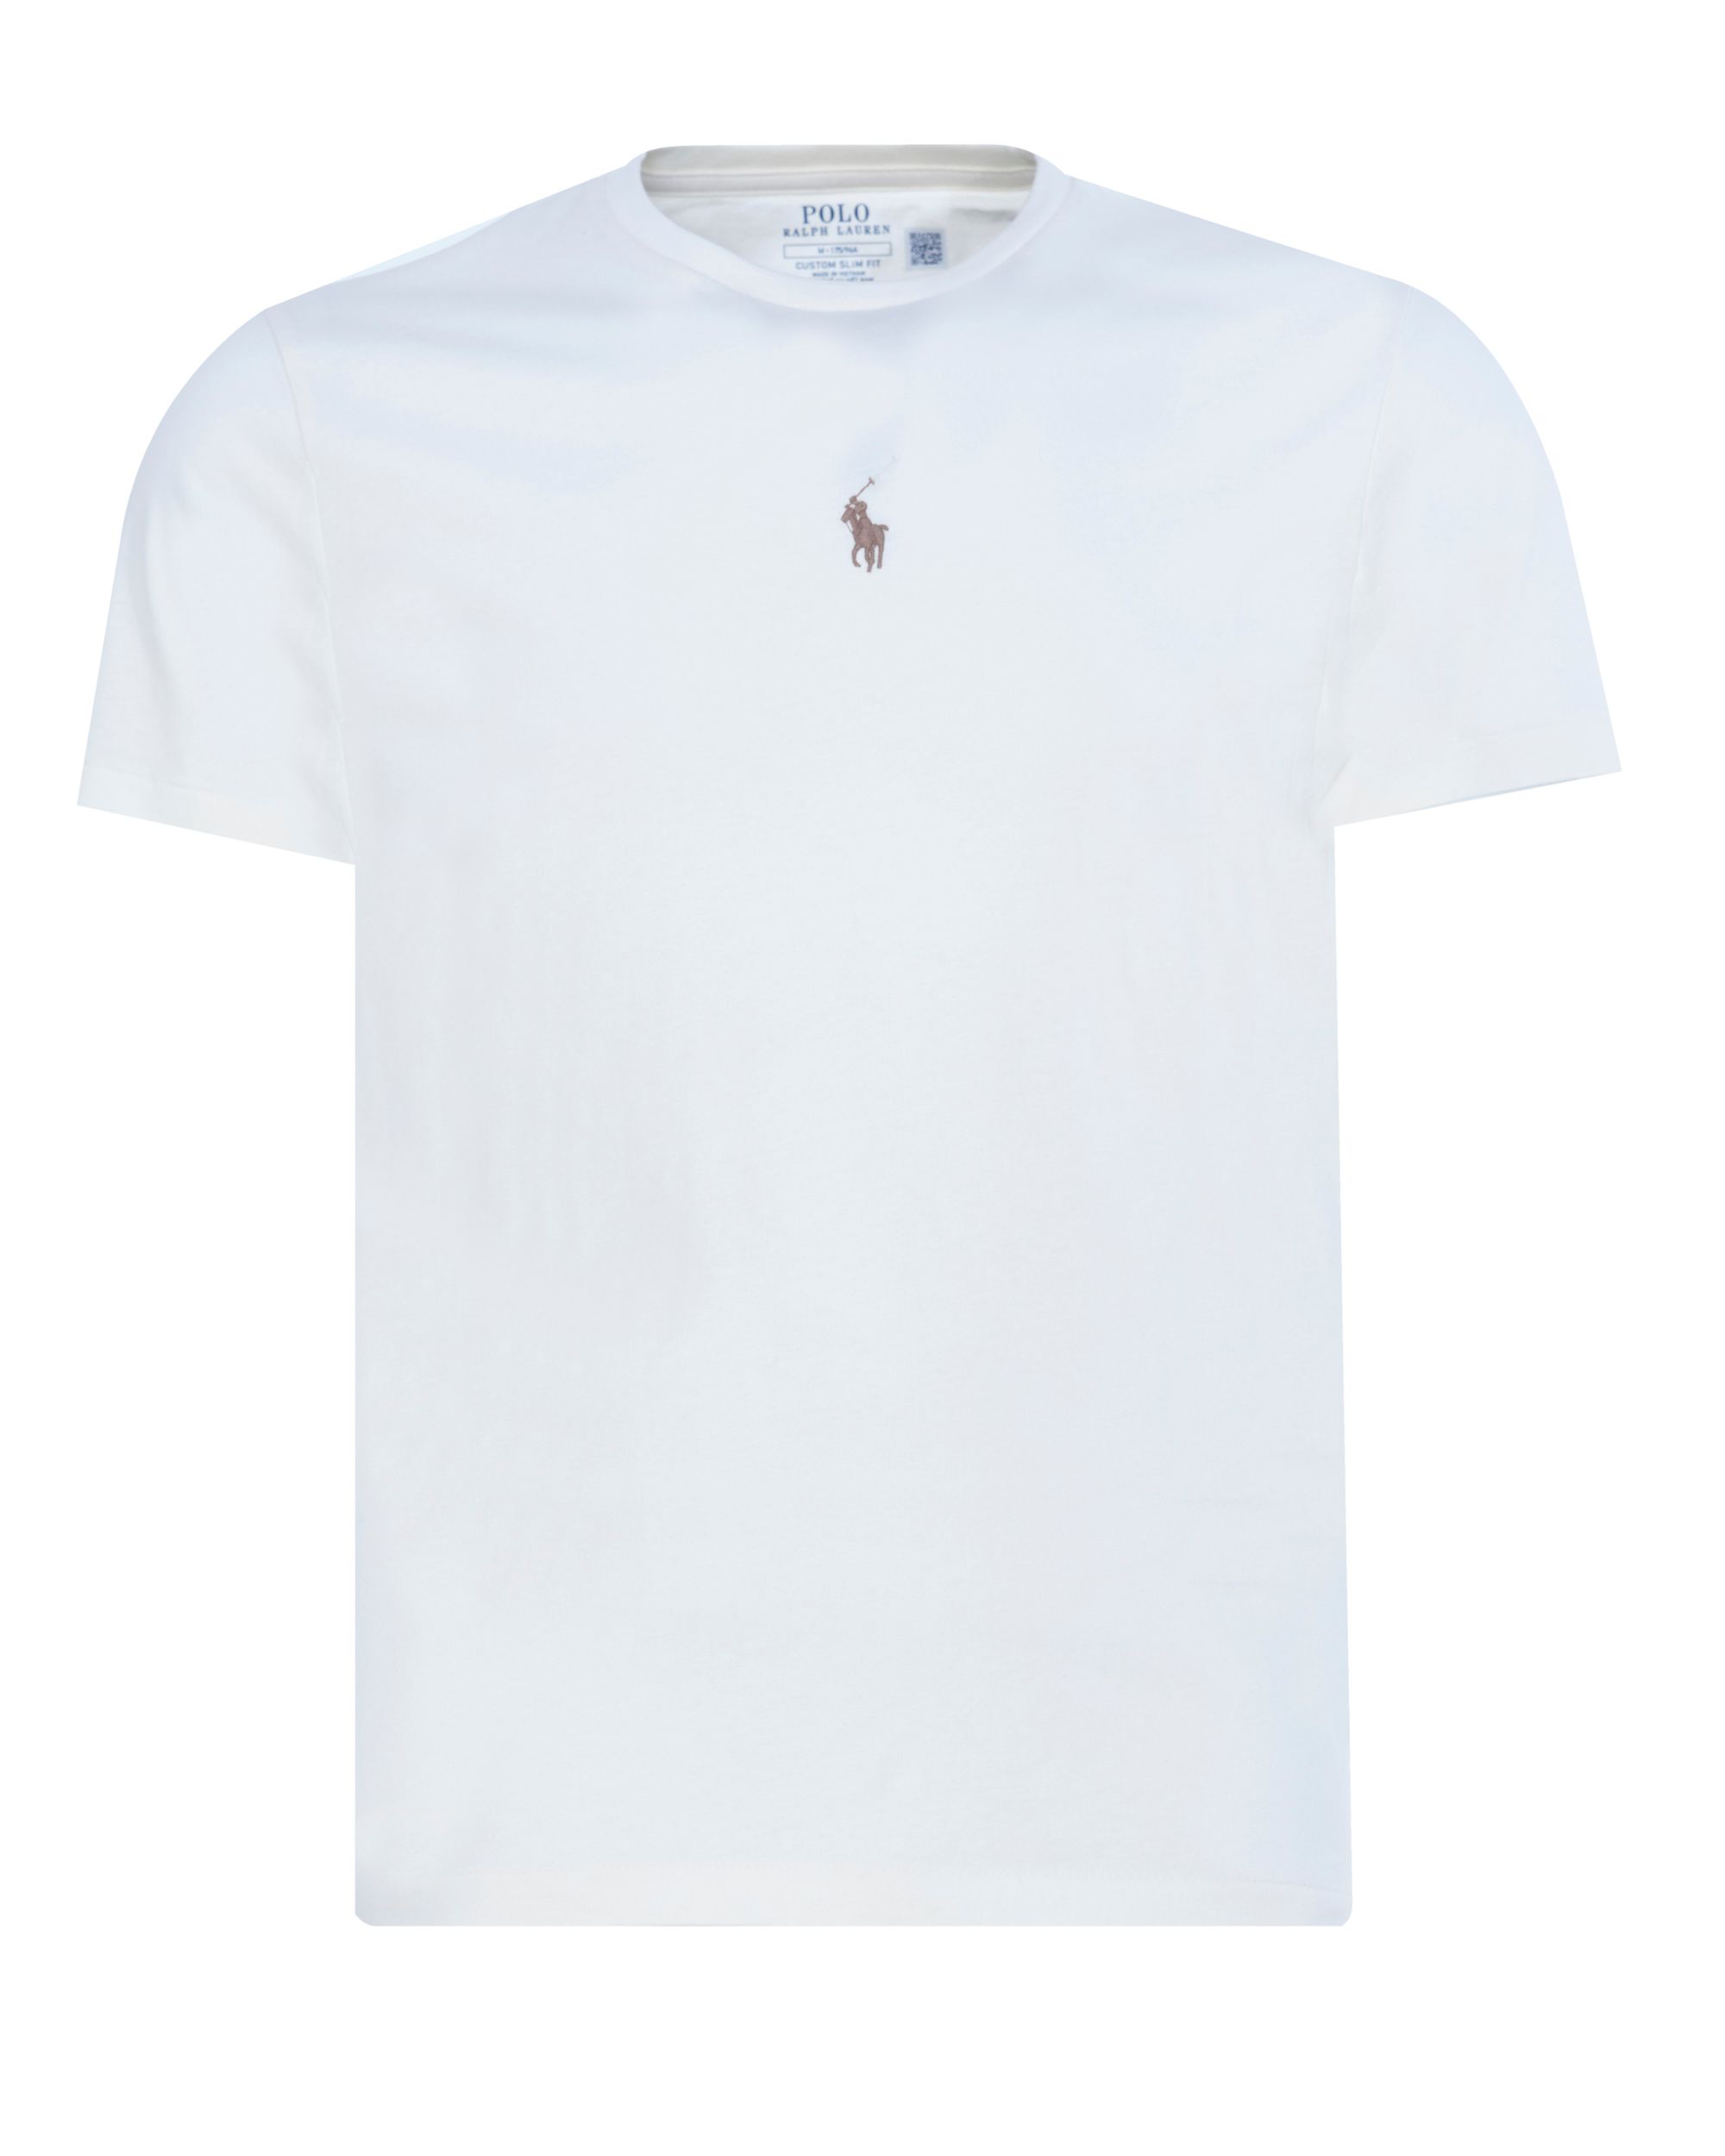 Polo Ralph Lauren - T-shirt KM Ecru 080597-001-L